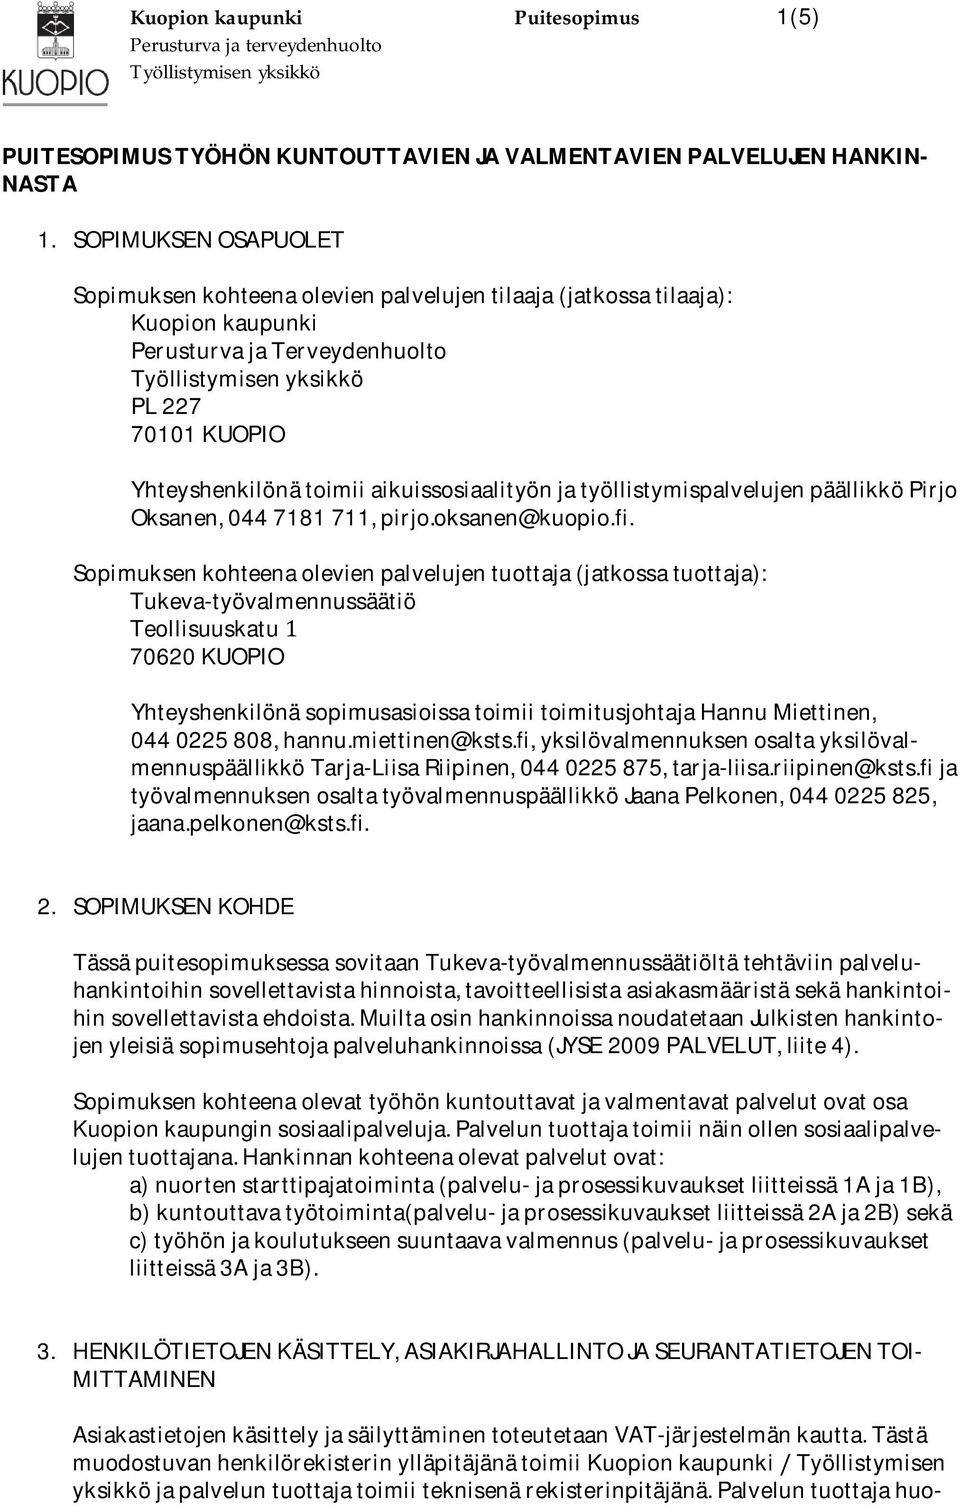 YhteyshenkilönätoimiiaikuissosiaalityönjatyöllistymispalvelujenpäällikköPirjo Oksanen,0447181711,pirjo.oksanen@kuopio.fi.